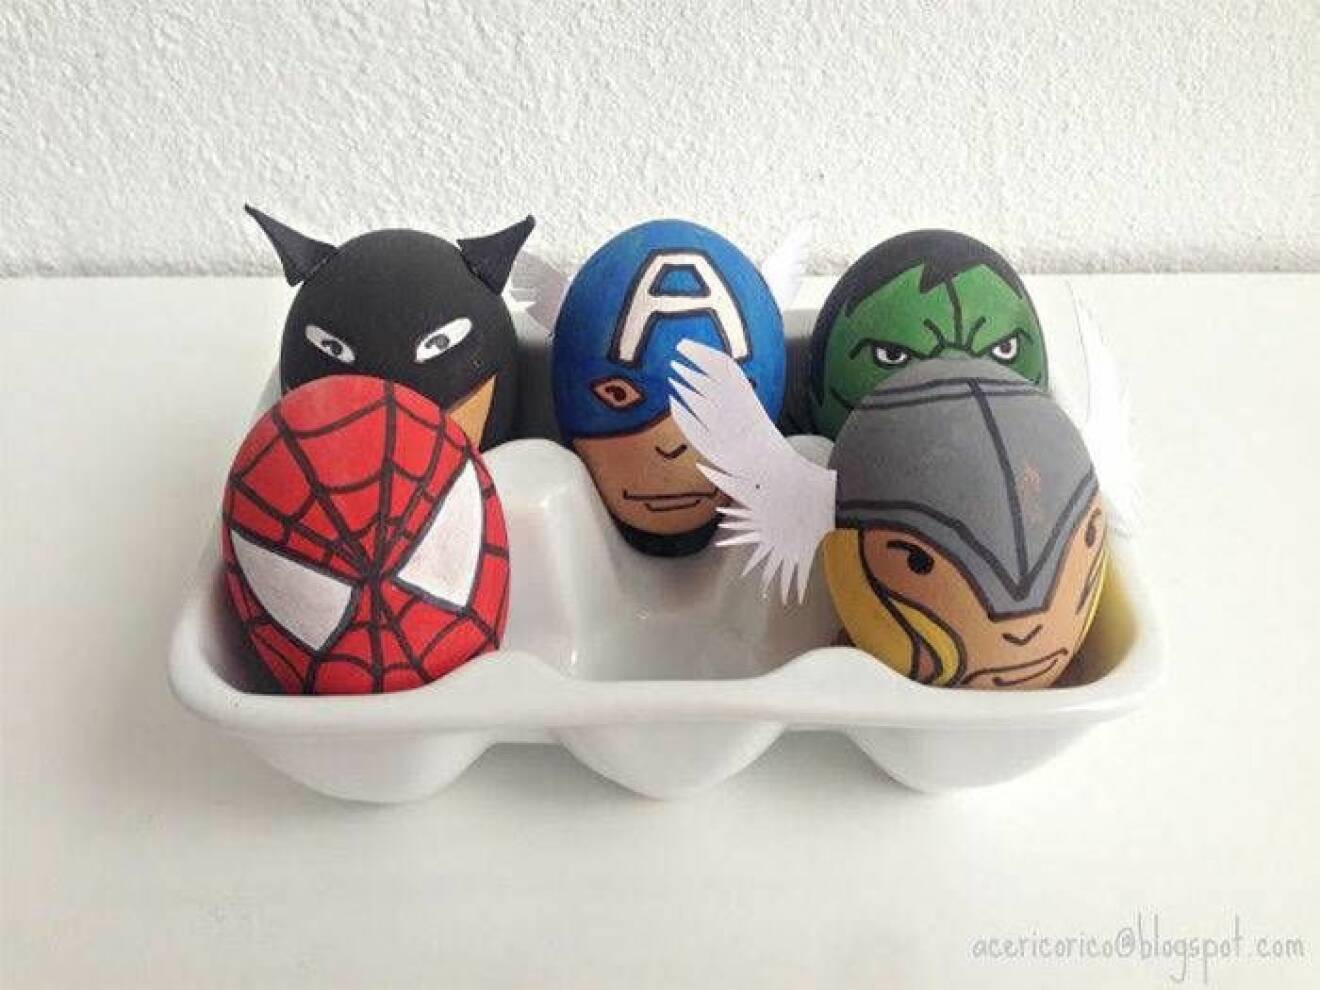 Måla påskäggen till superhjältar med barnen i påsk.